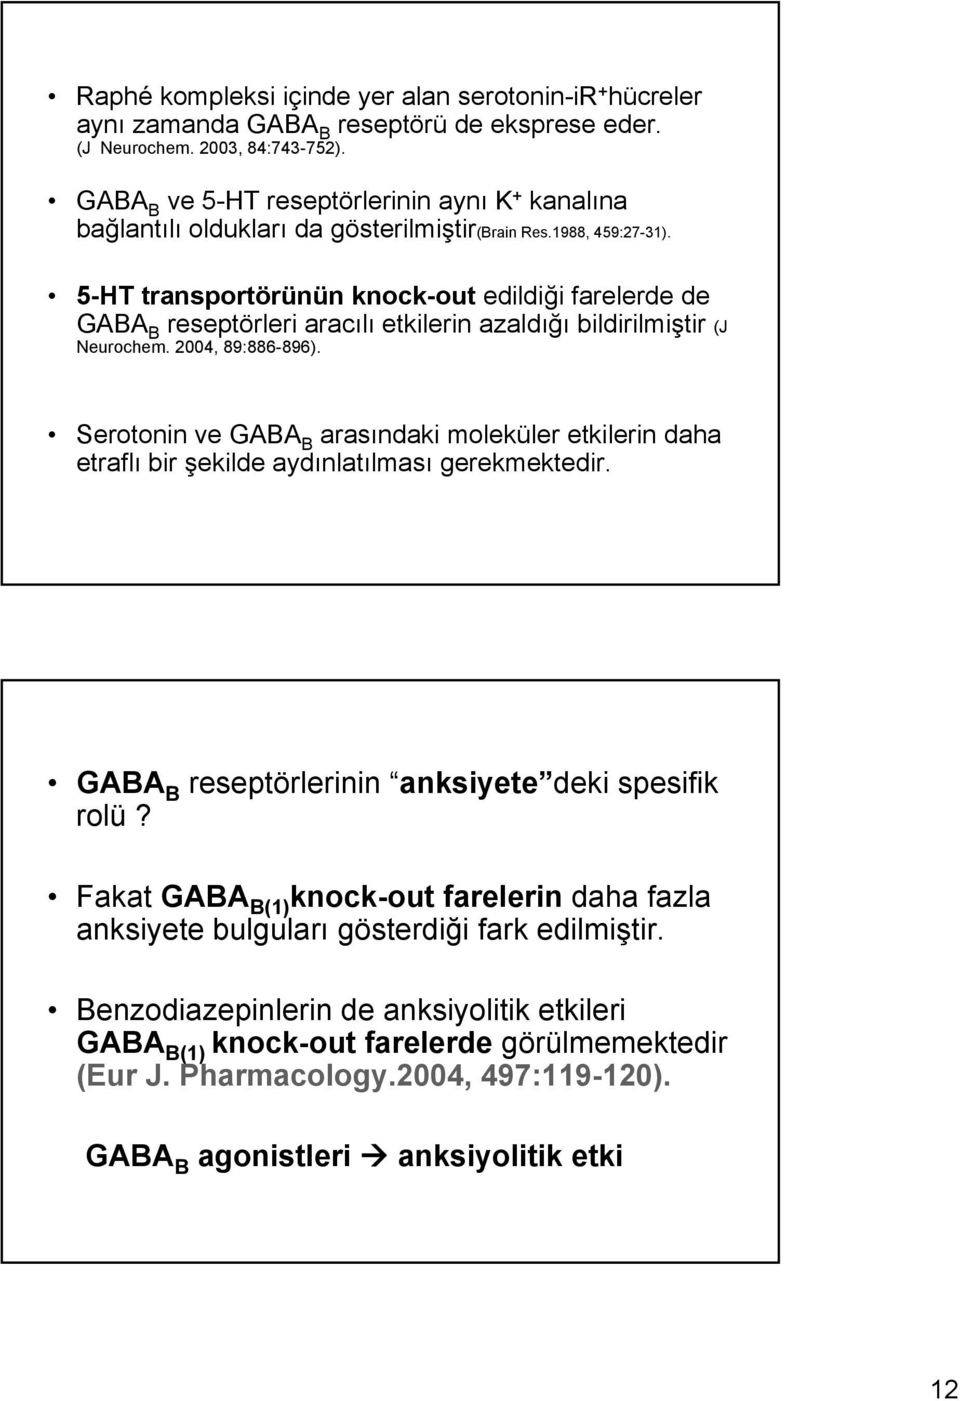 5-HT transportörünün knock-out edildiği farelerde de GABA B reseptörleri aracılı etkilerin azaldığı bildirilmiştir (J Neurochem. 2004, 89:886-896).